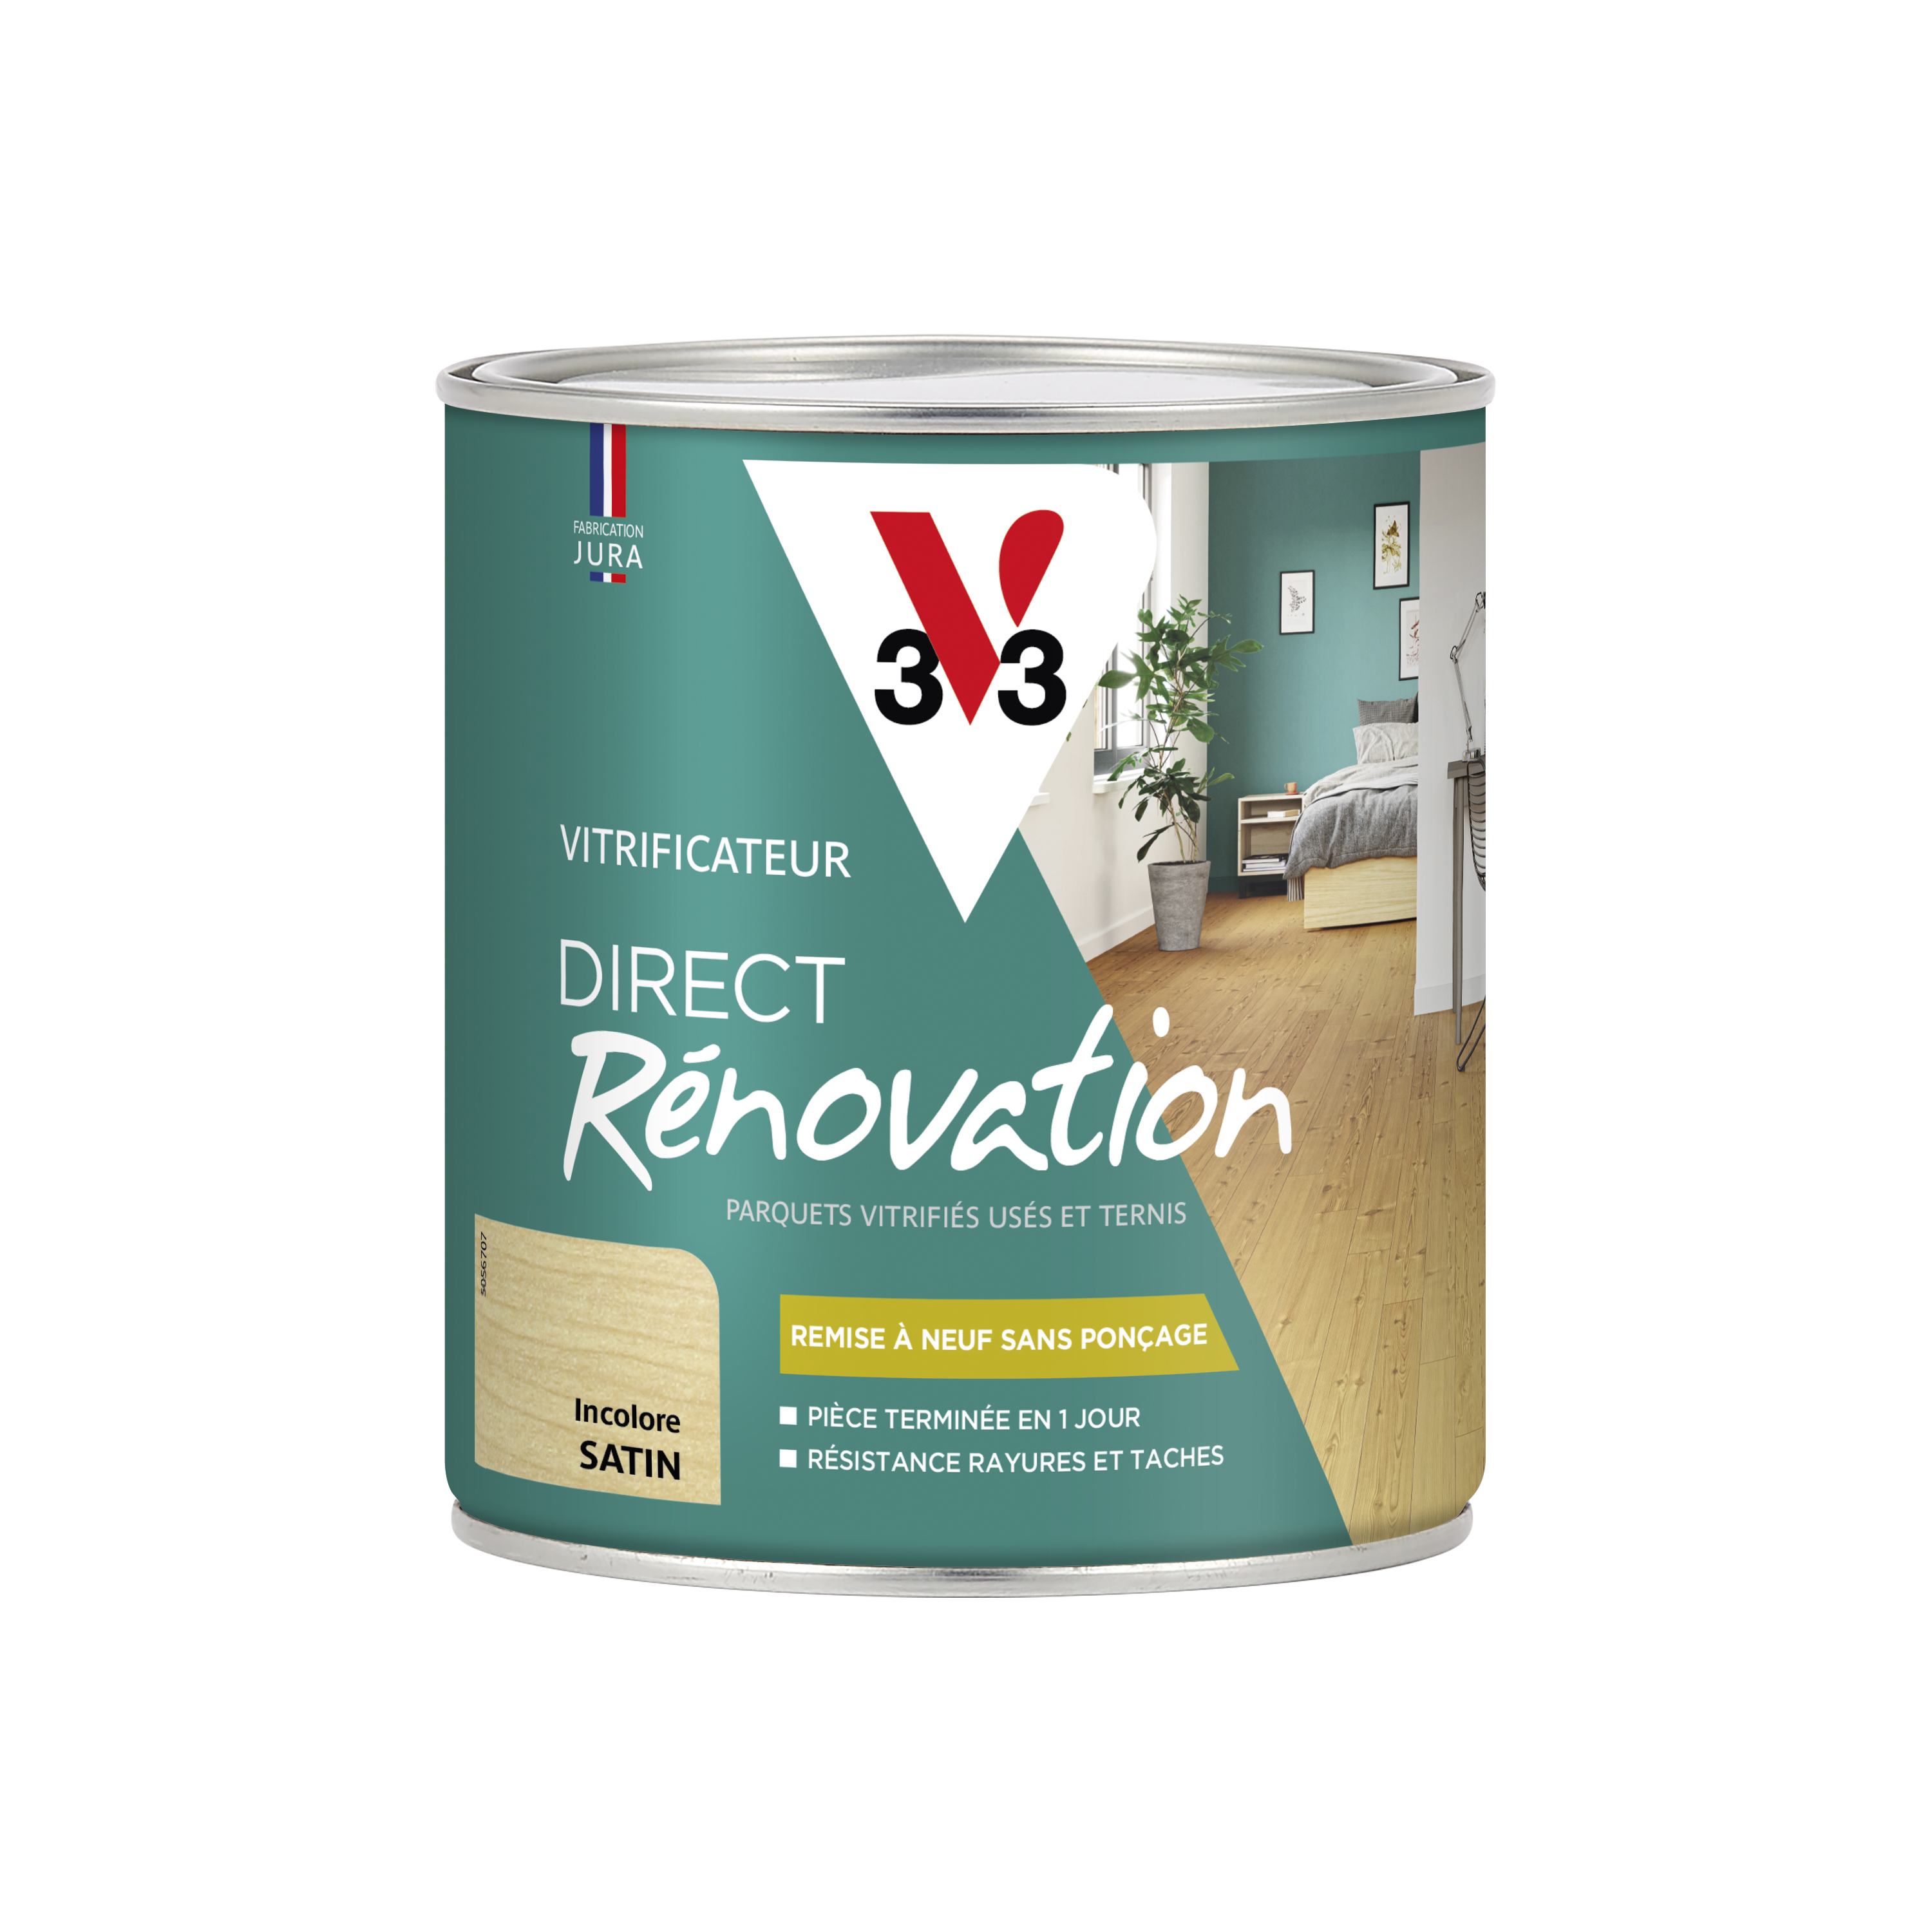 Vitrificateur renovation satin incolore 0,75 L - V33